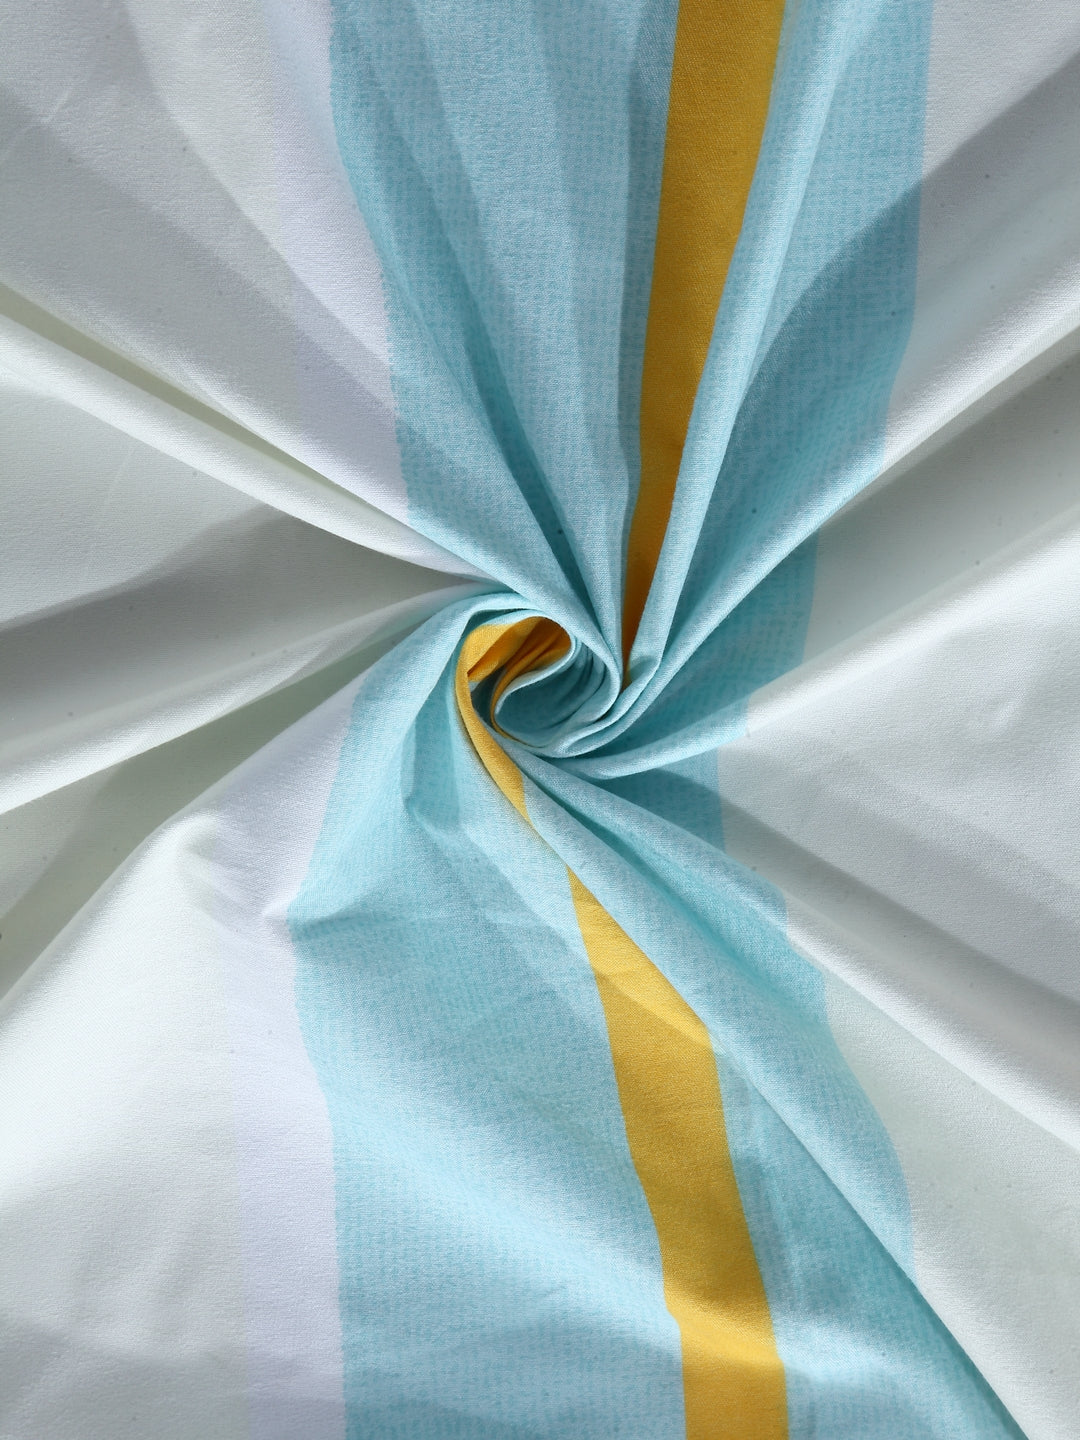 Arrabi Multi Stripes TC Cotton Blend Single Size Bedsheet with 1 Pillow Cover (220 x 150 cm)